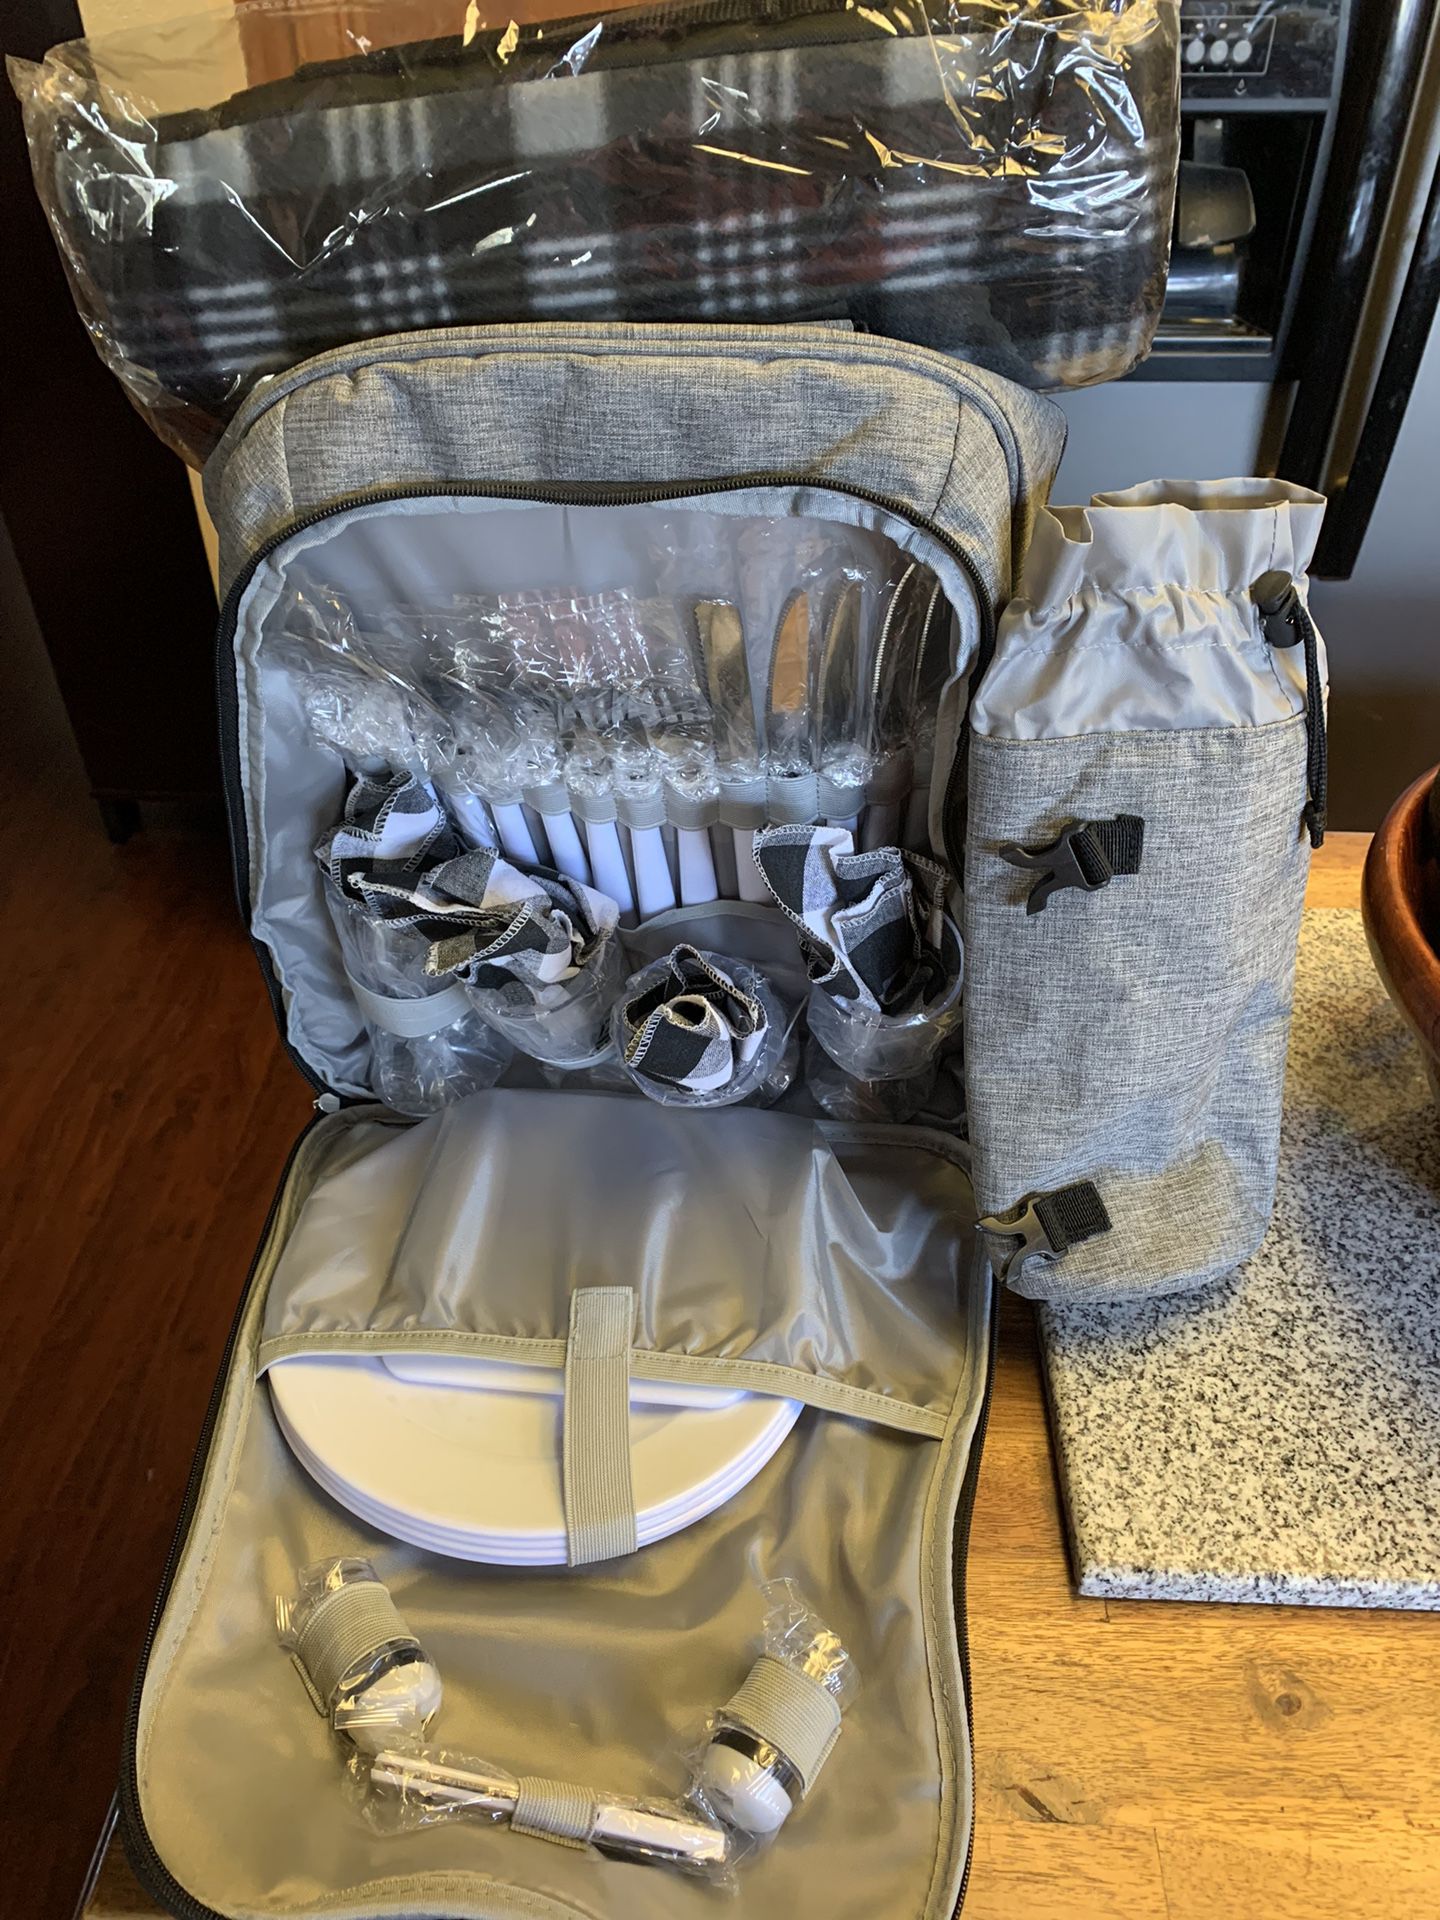 Backpack Travel Picnic Set